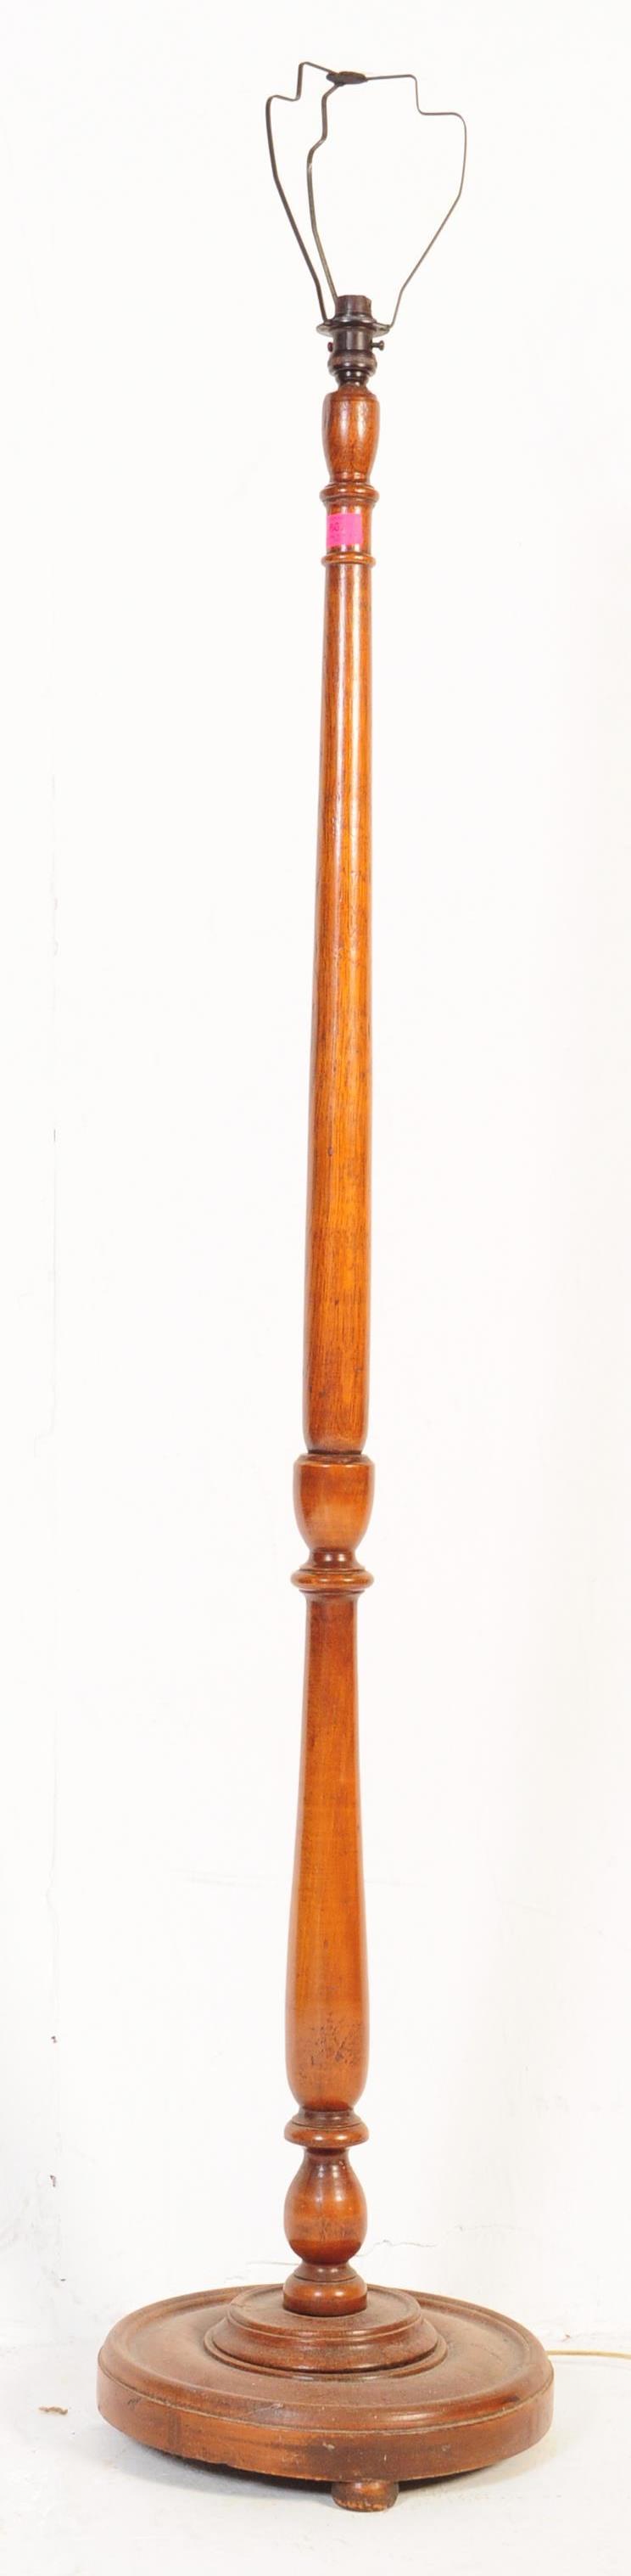 EARLY 20TH CENTURY EDWARDIAN MAHOGANY STANDARD LAMP